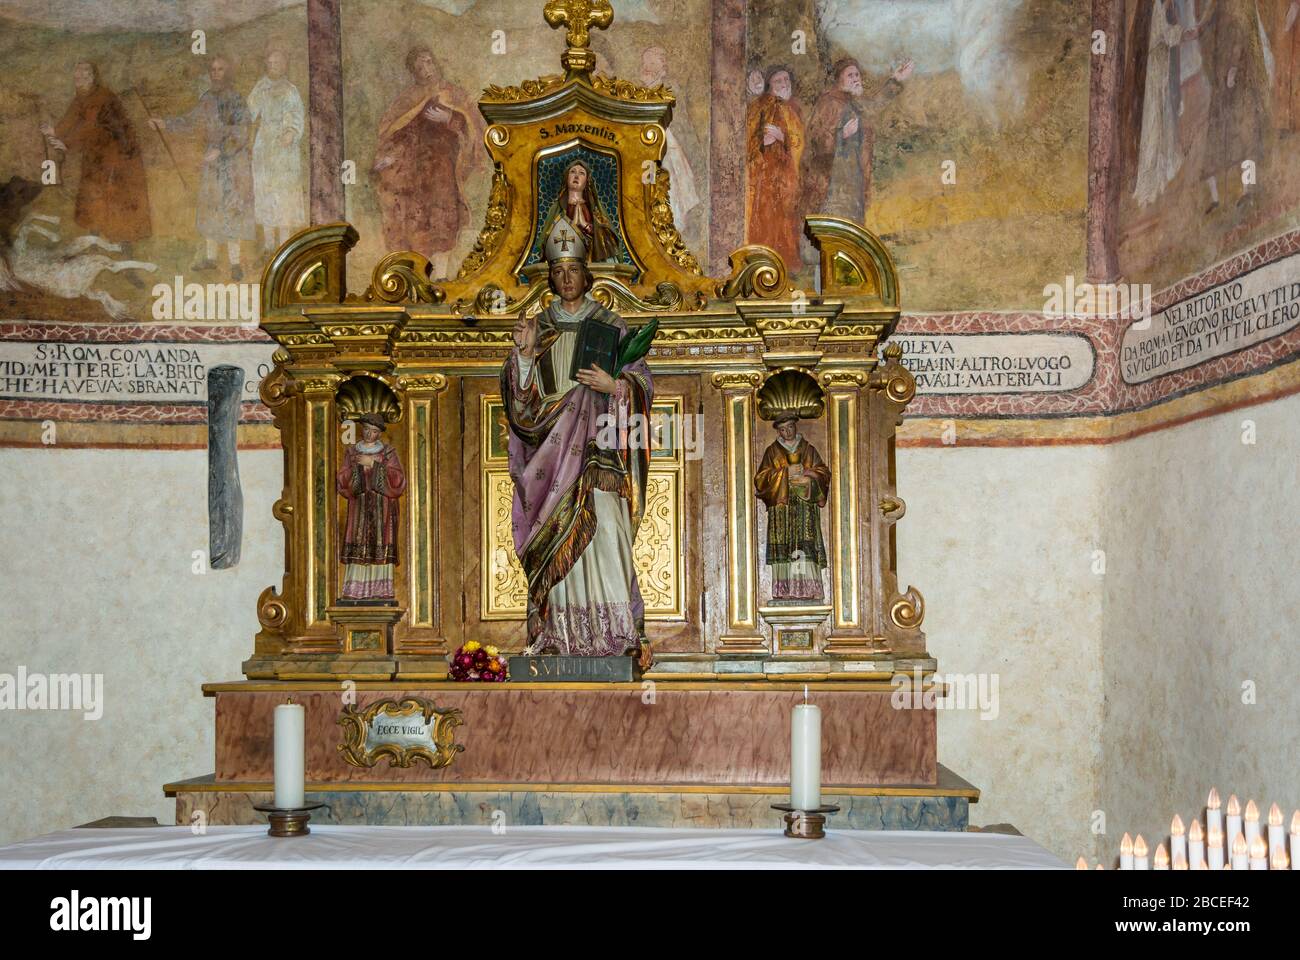 Santuario de San Romedio. Estatua de San Romedio dentro del Santuario. No Valle, Trentino Alto Adige, norte de Italia - provincia de Trento Foto de stock